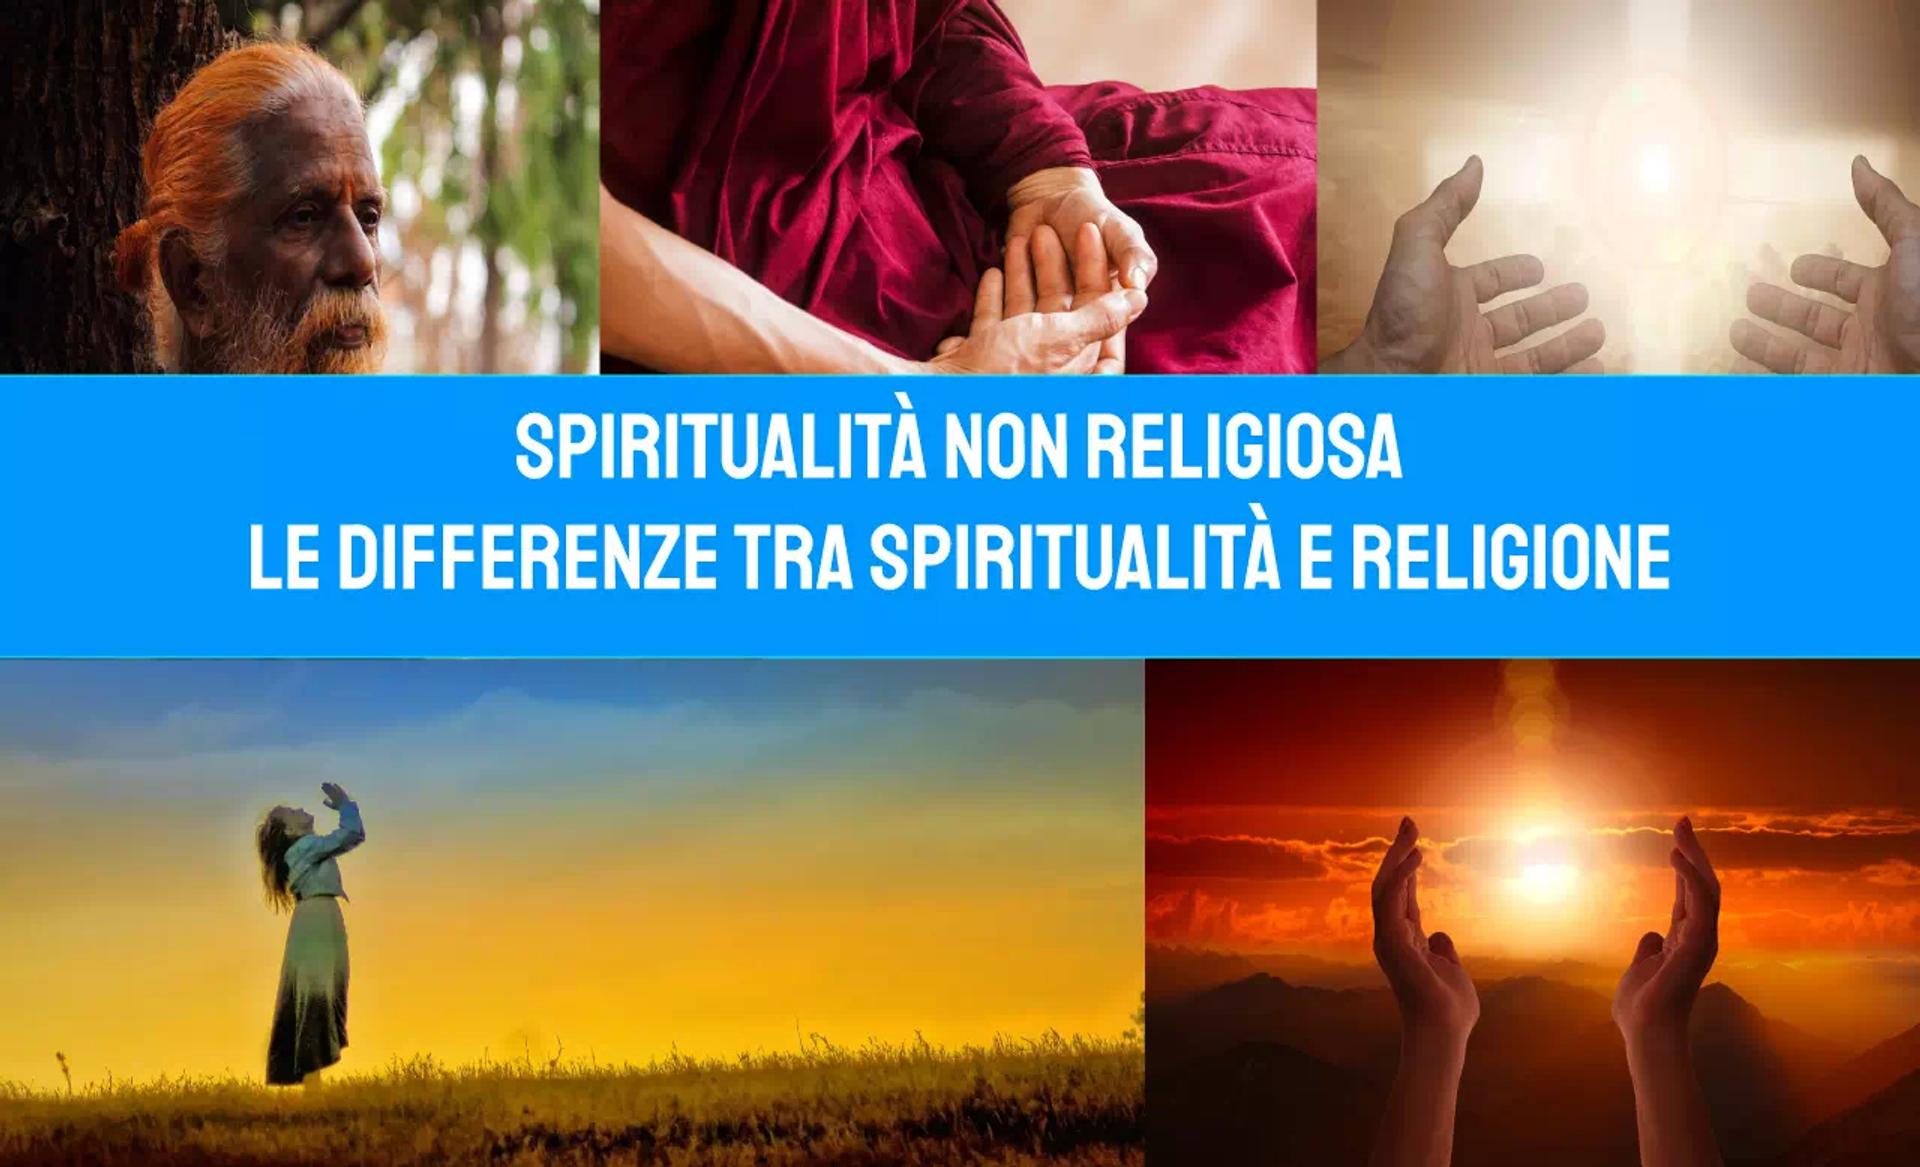 Spiritualità non religiosa: le differenze tra Spiritualità e Religione image